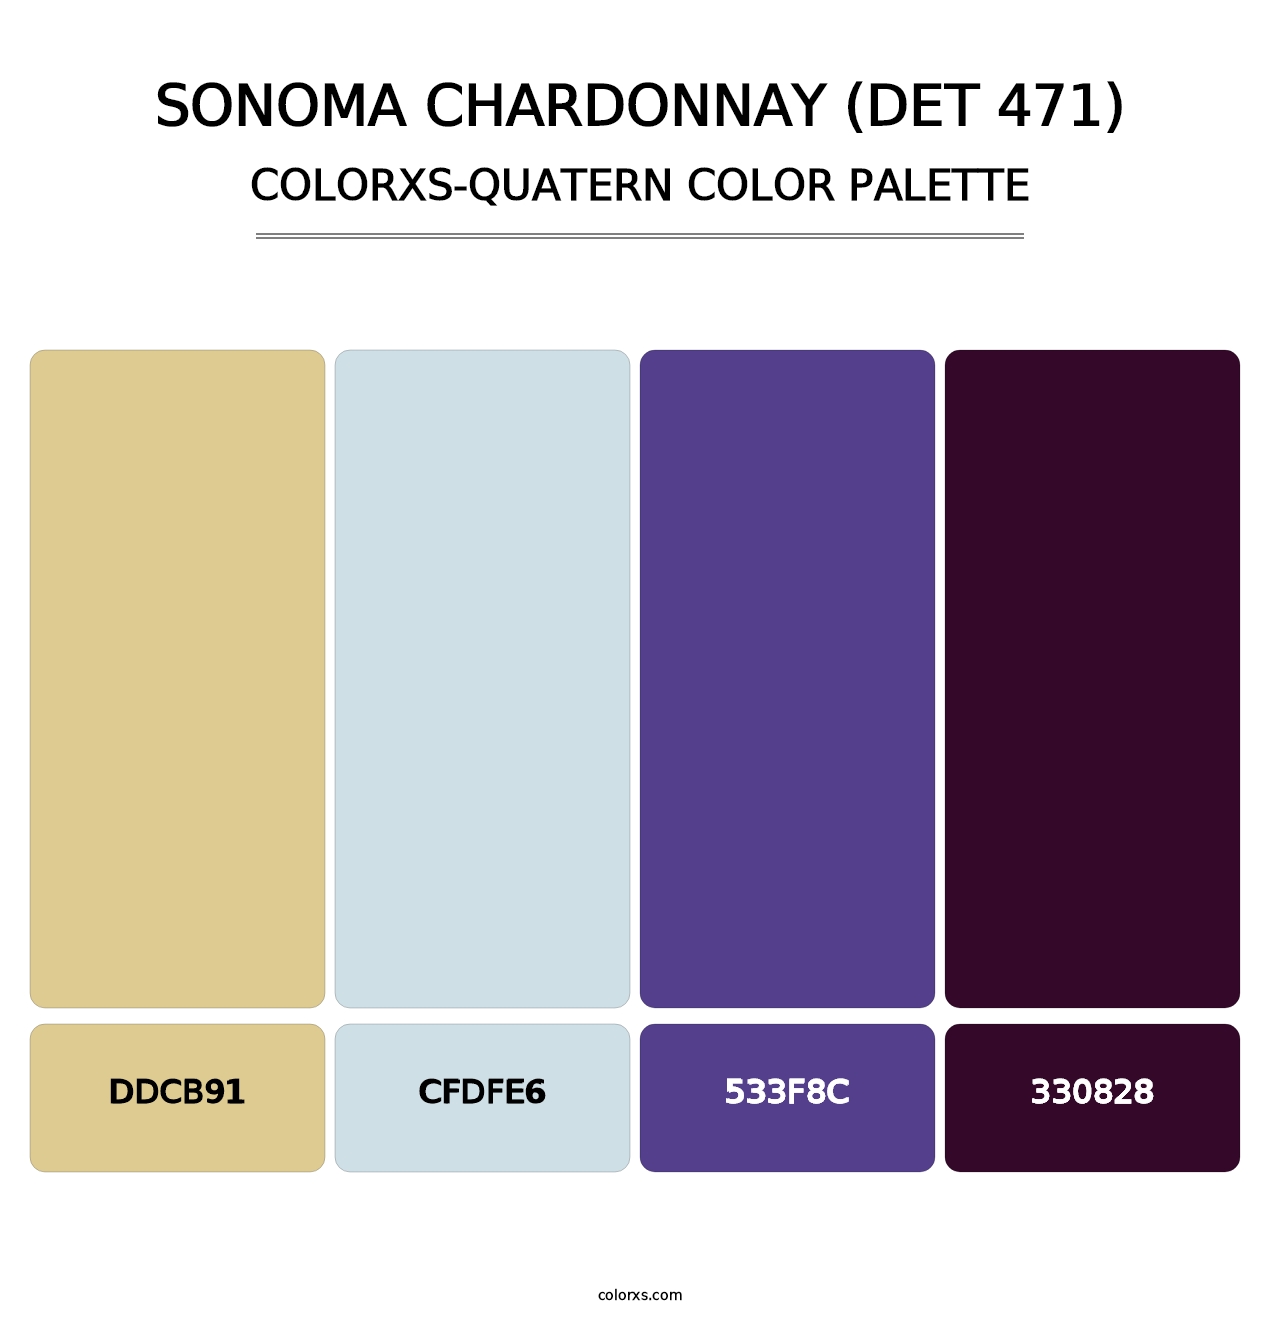 Sonoma Chardonnay (DET 471) - Colorxs Quatern Palette